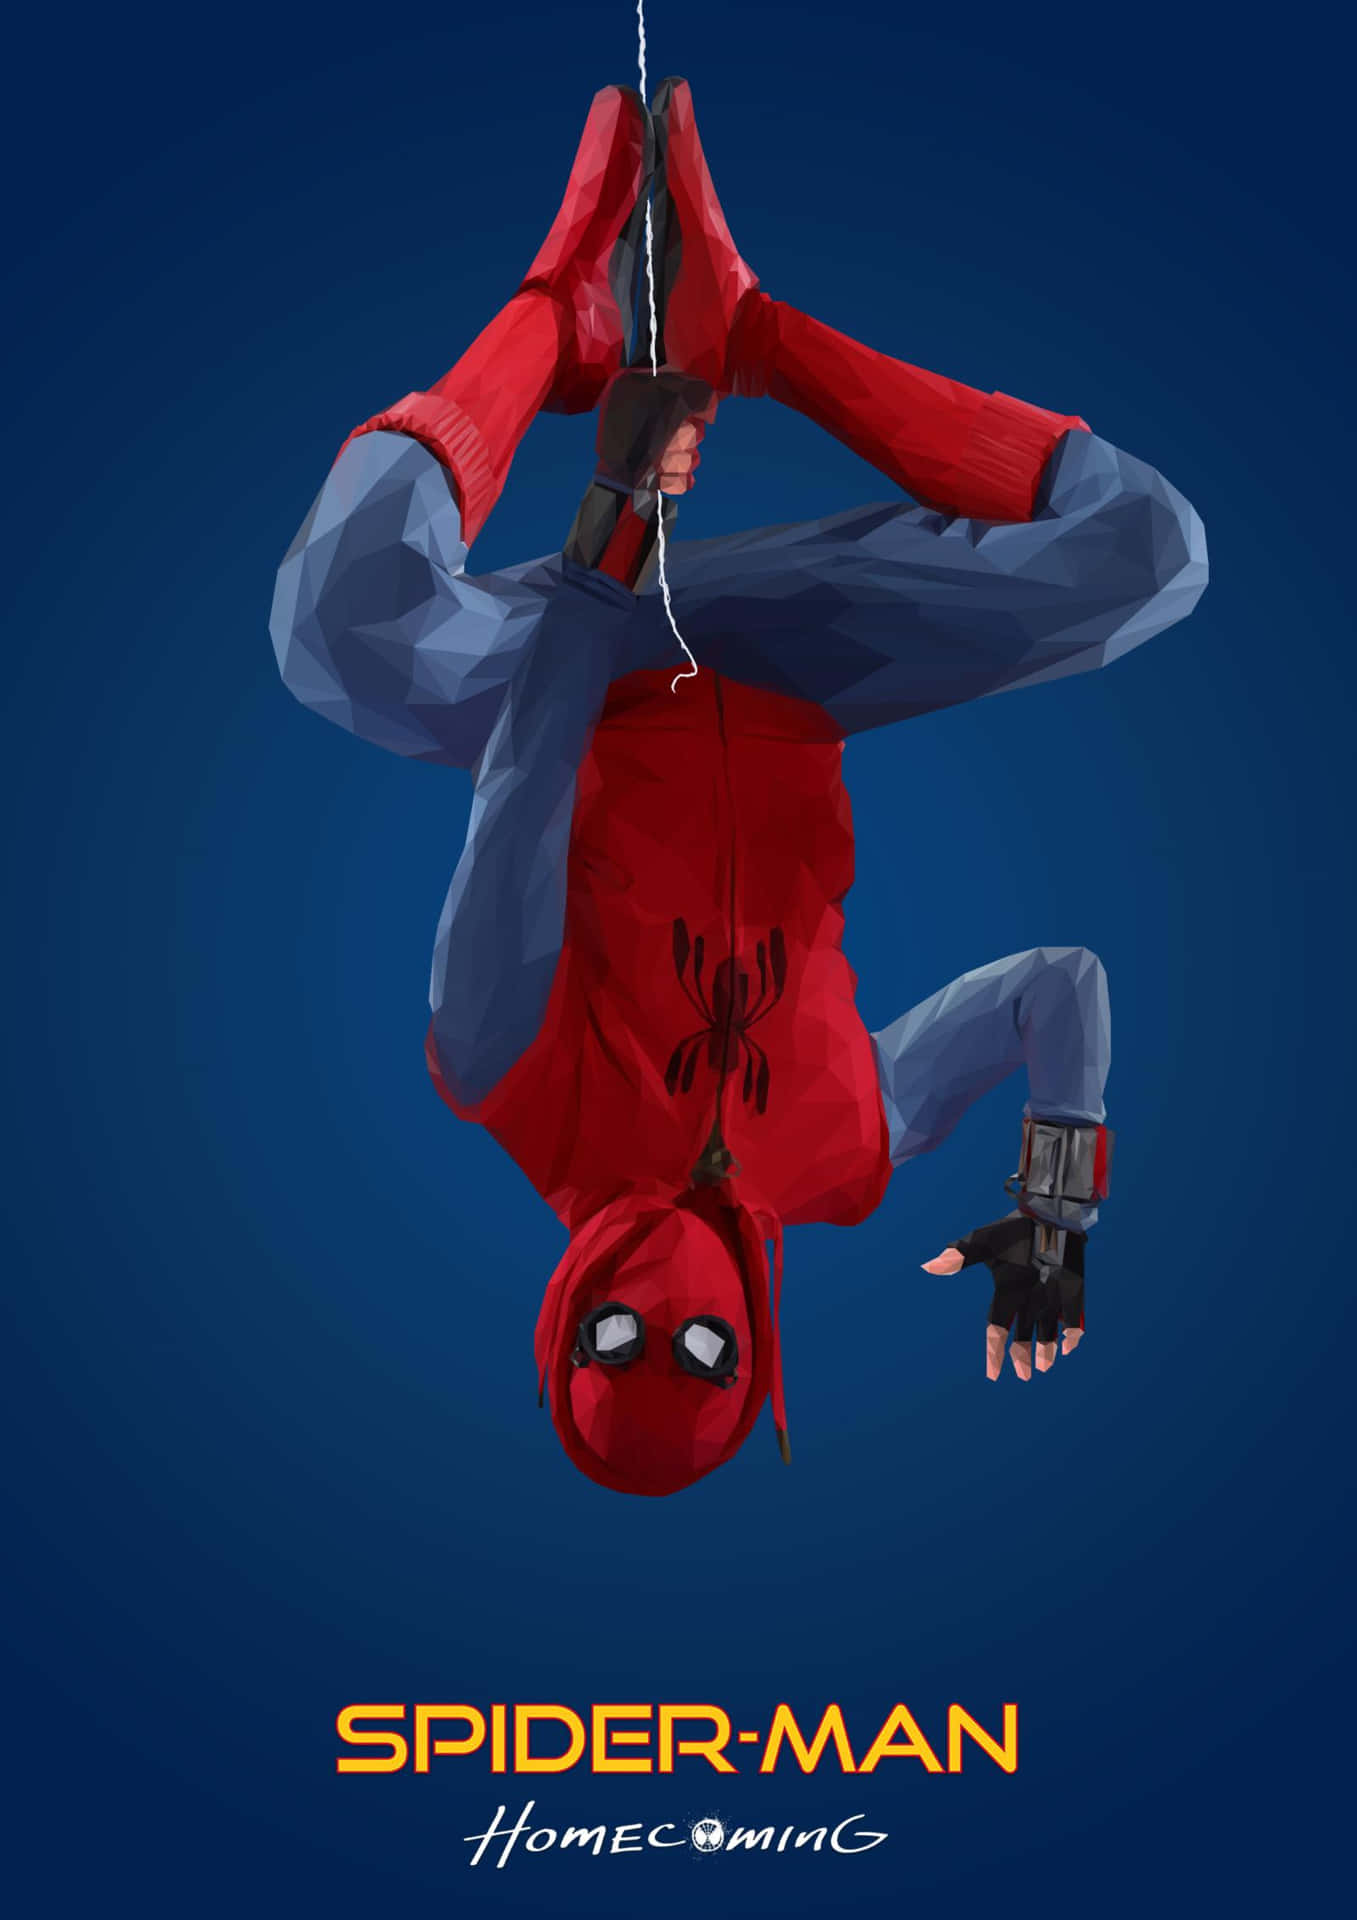 Prototype Spider Suit Spider Man Computer Wallpaper